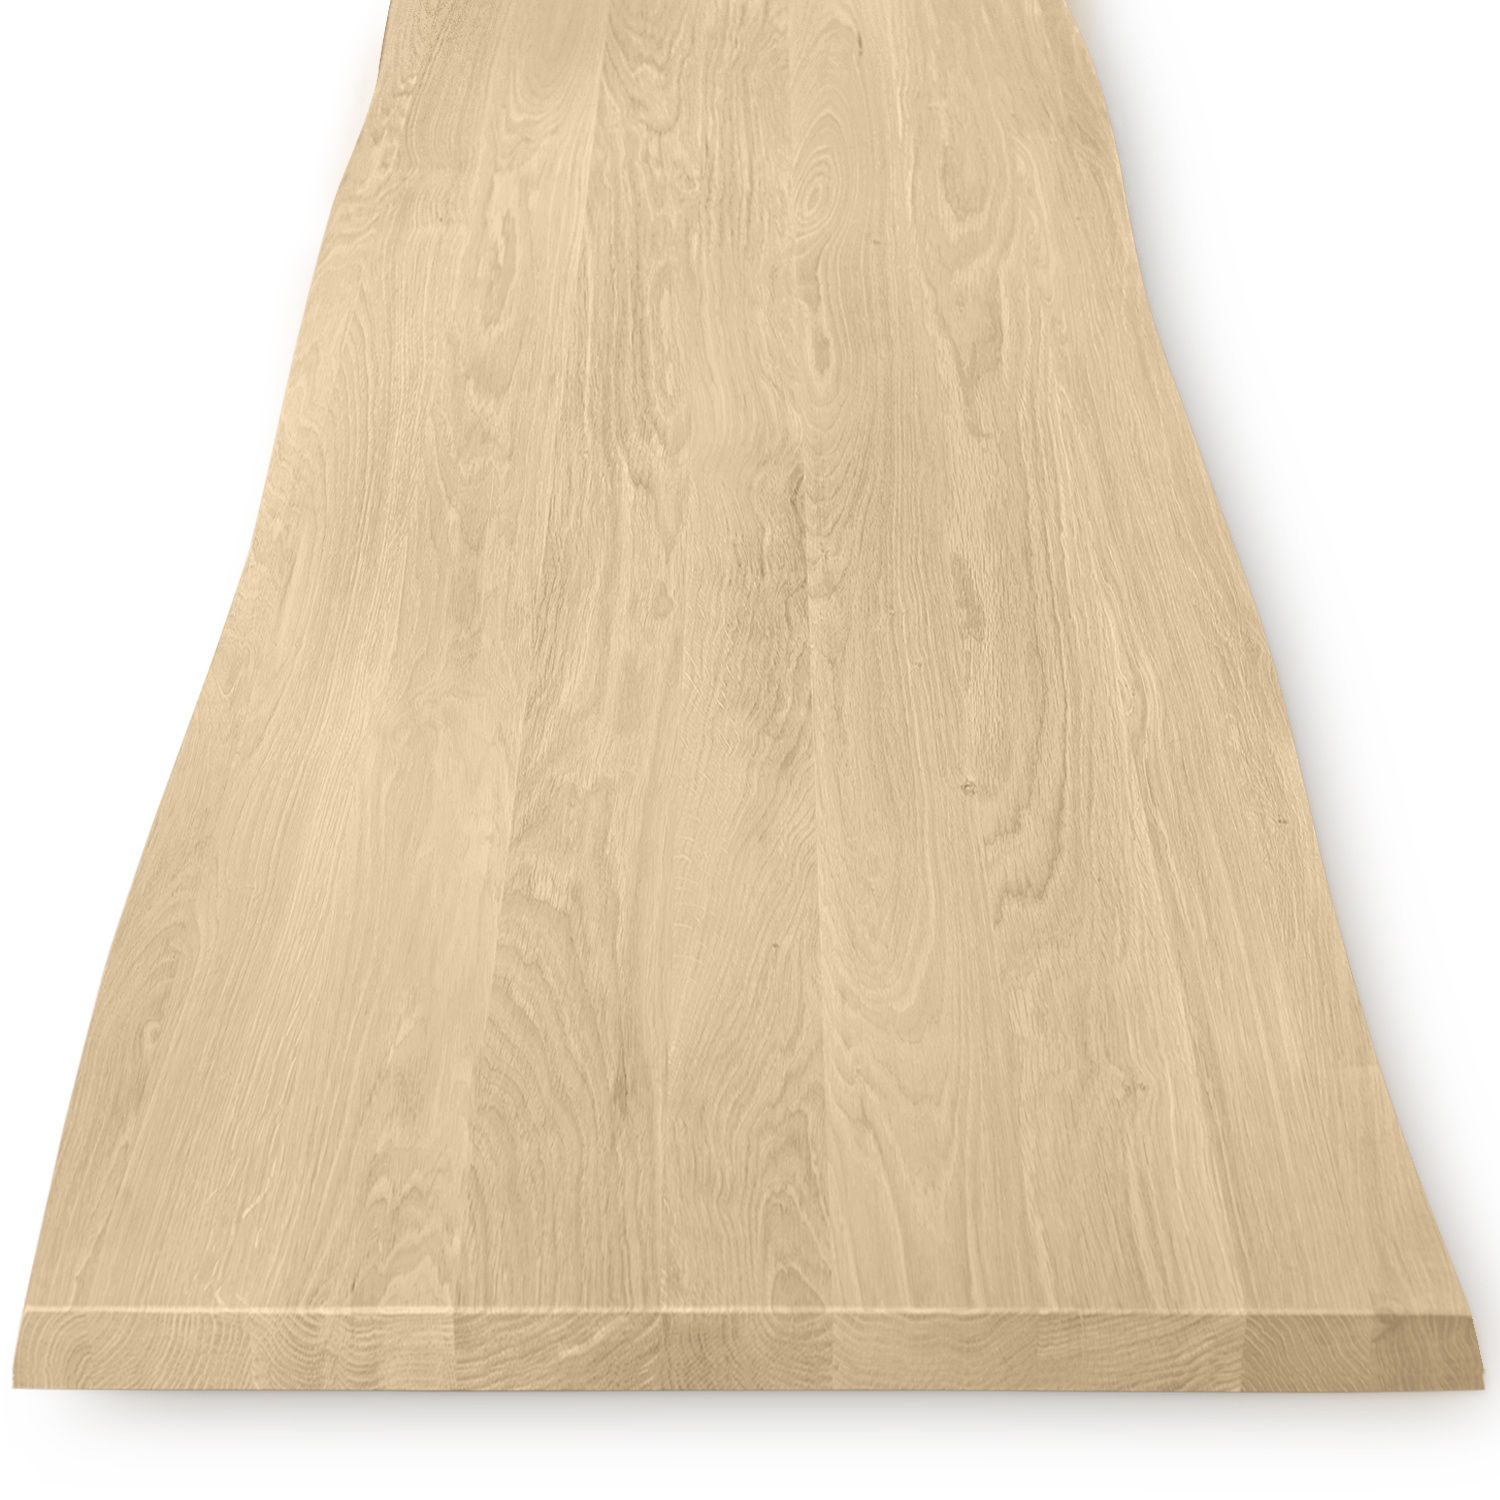  Tischplatte Eiche - mit Baumkante (Optik) - nach Maß - 4 cm dick - Eichenholz A-Qualität - Eiche Tischplatte massiv mit natürlichen Baumkant - verleimt & künstlich getrocknet (HF 8-12%) - 50-120x50-300 cm